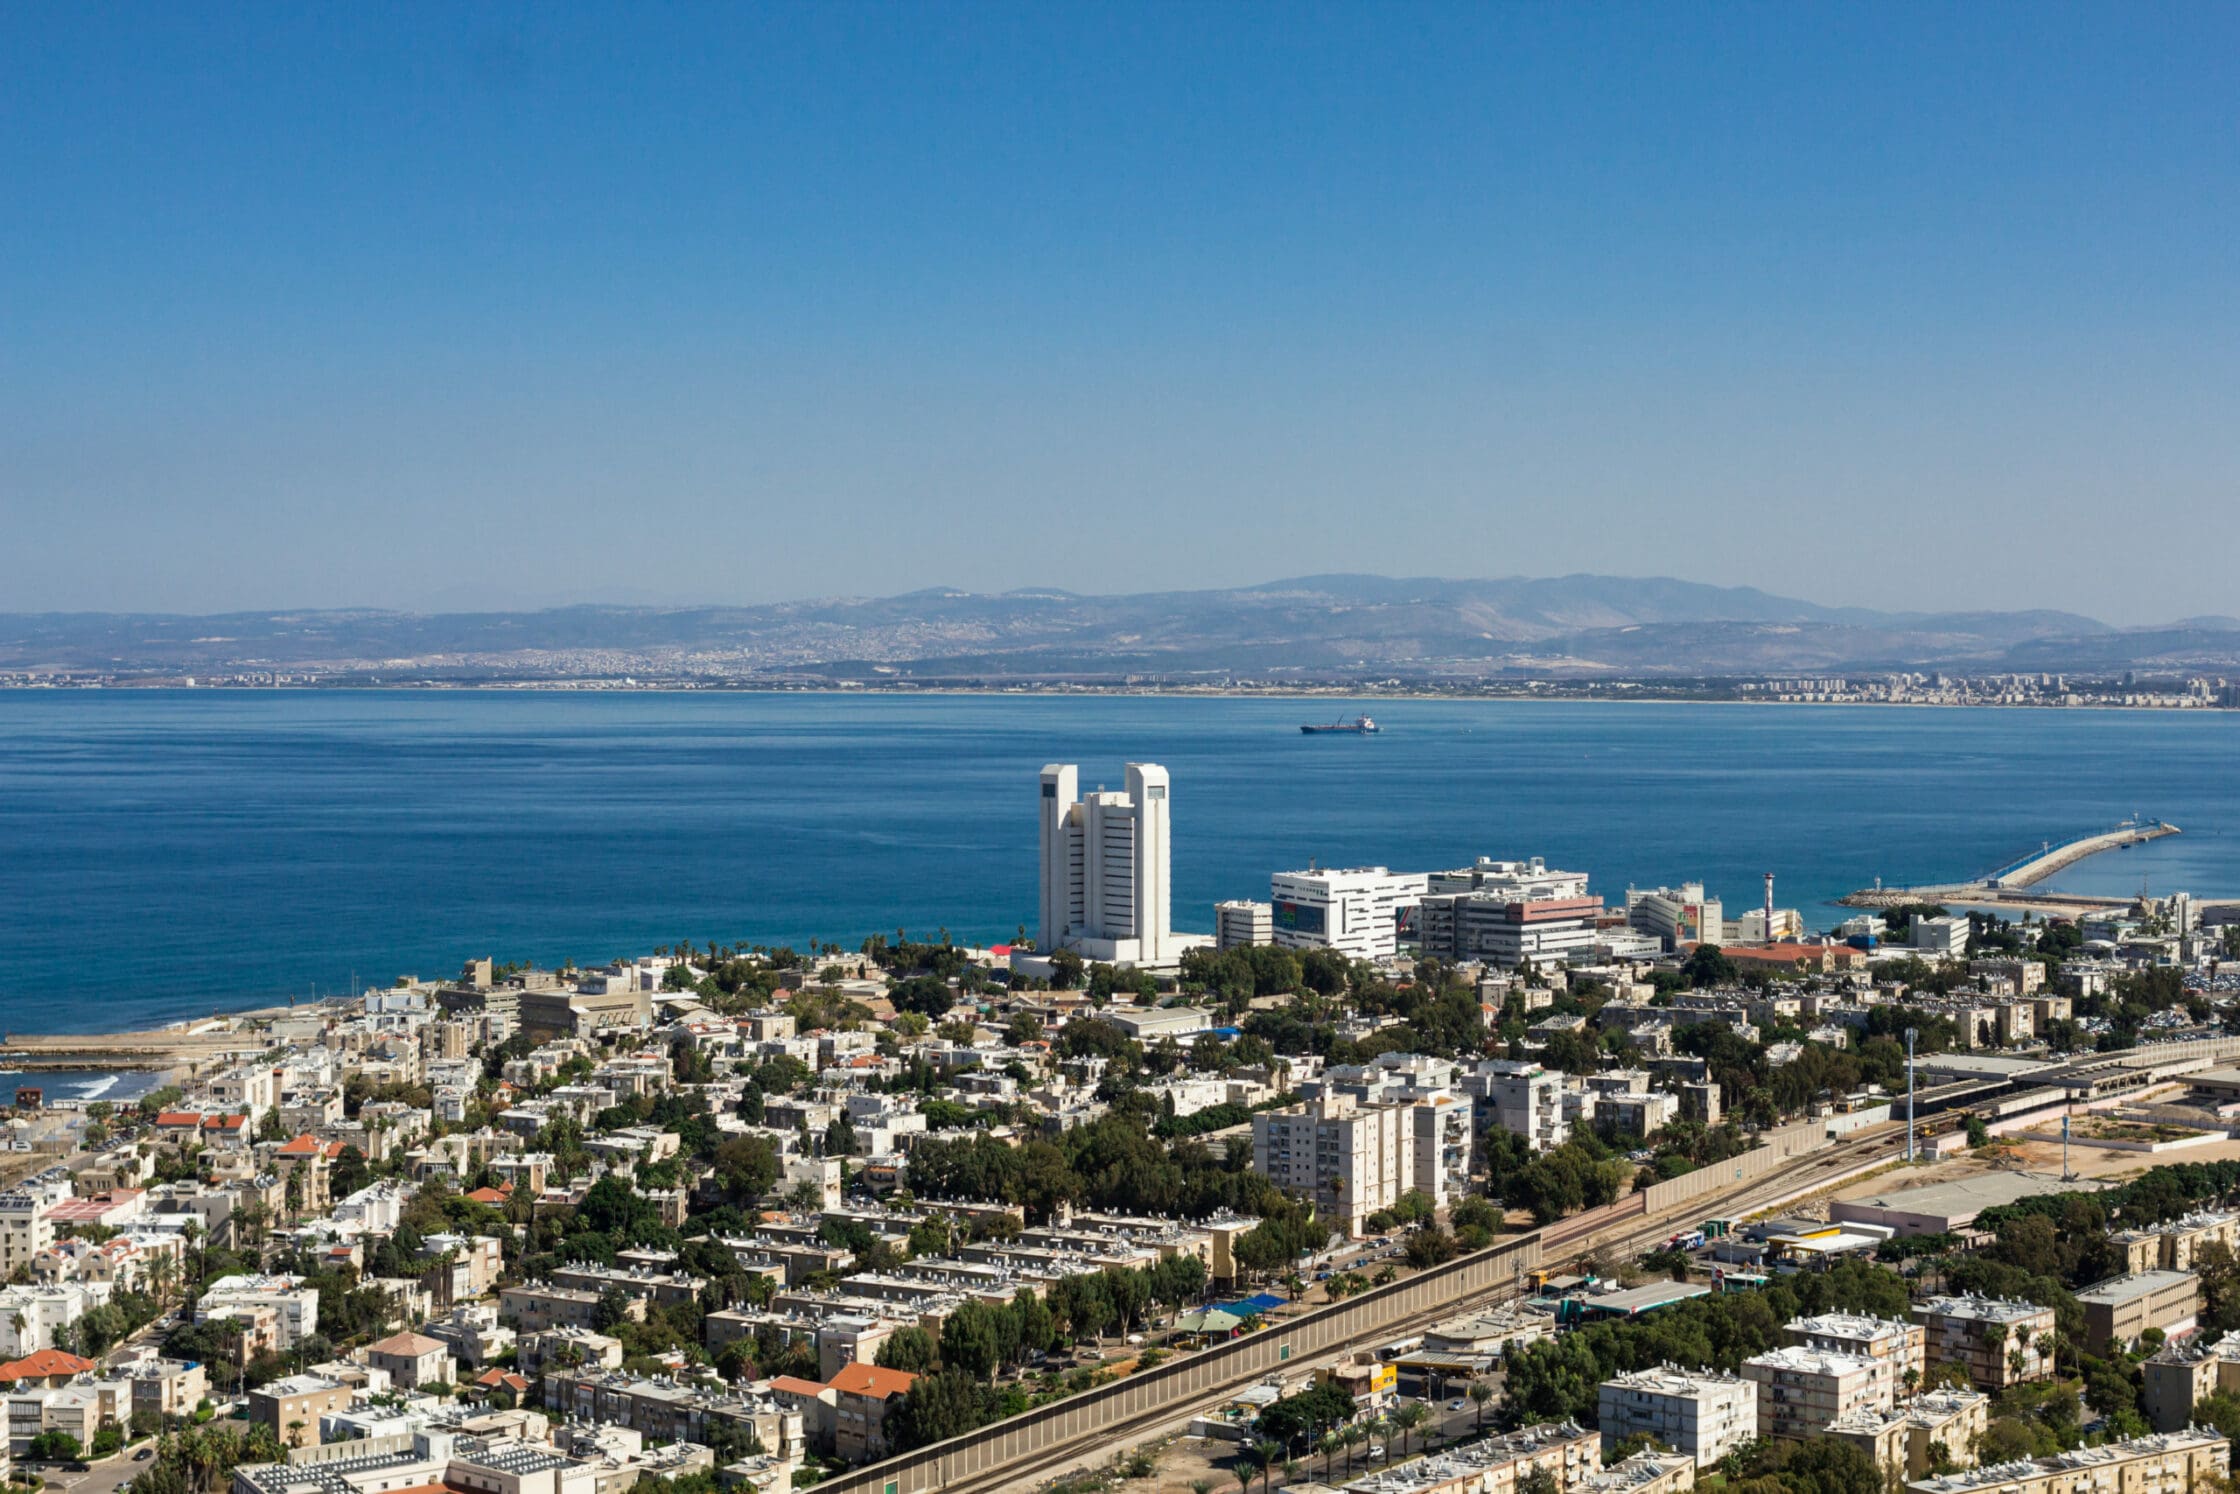 Blick auf die Hafeneinfahrt von Haifa, im Vordergrund ein Wohnviertel, im Hintergrund die hügelige Küstenlandschaft